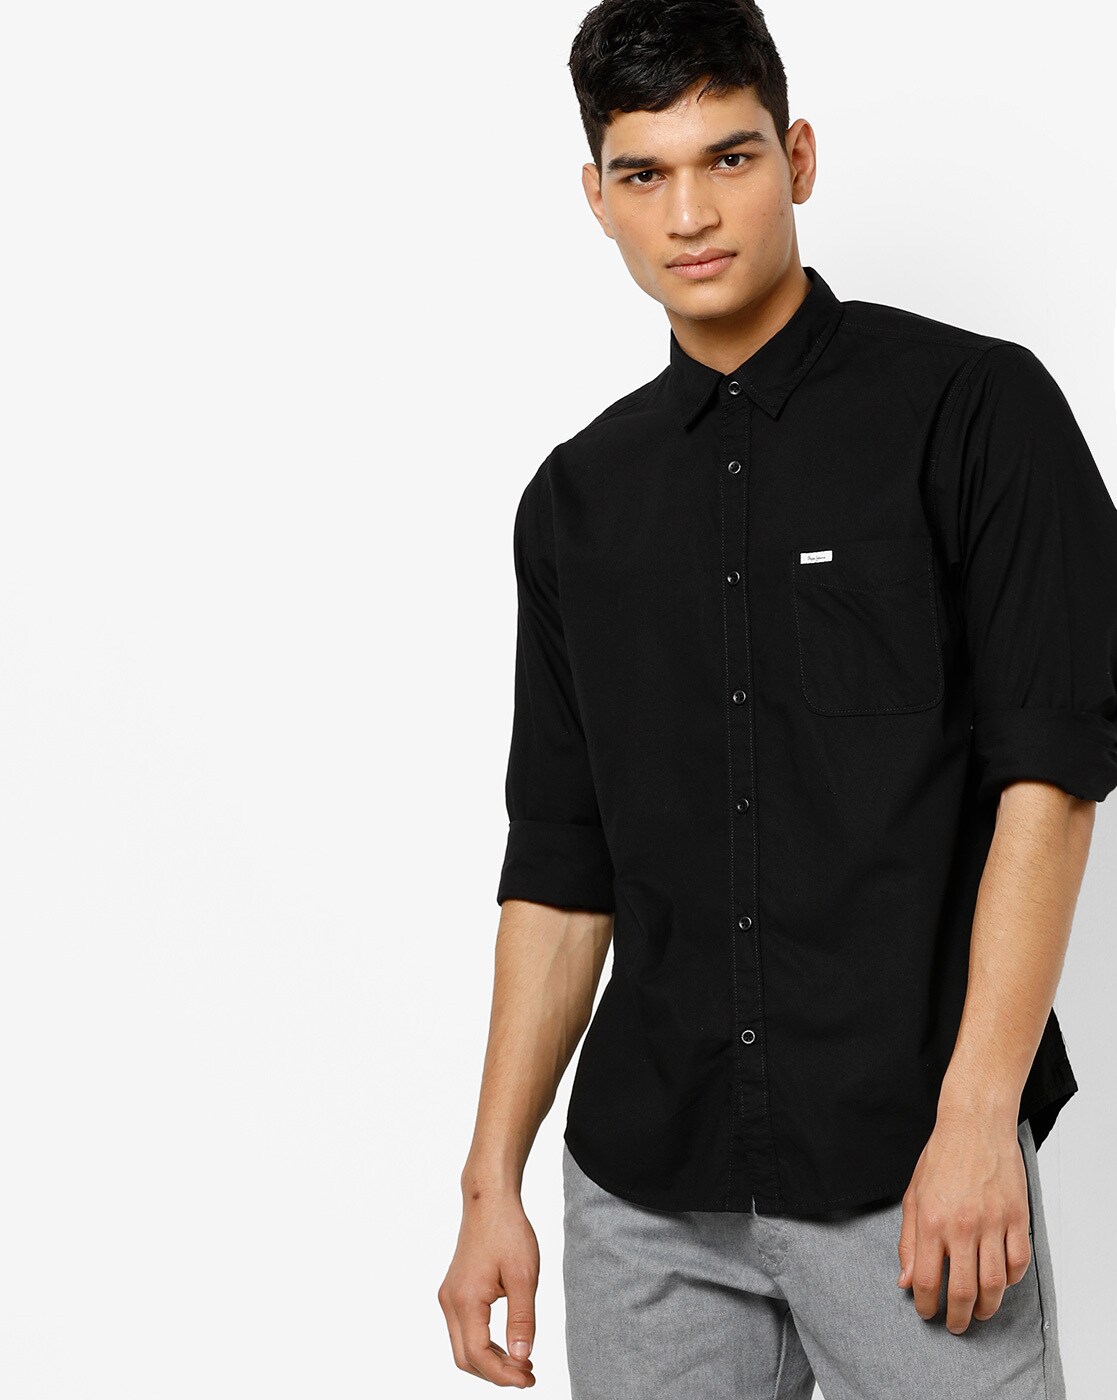 Buy Pepe Jeans Black Printed Long Sleeve Shirt Online